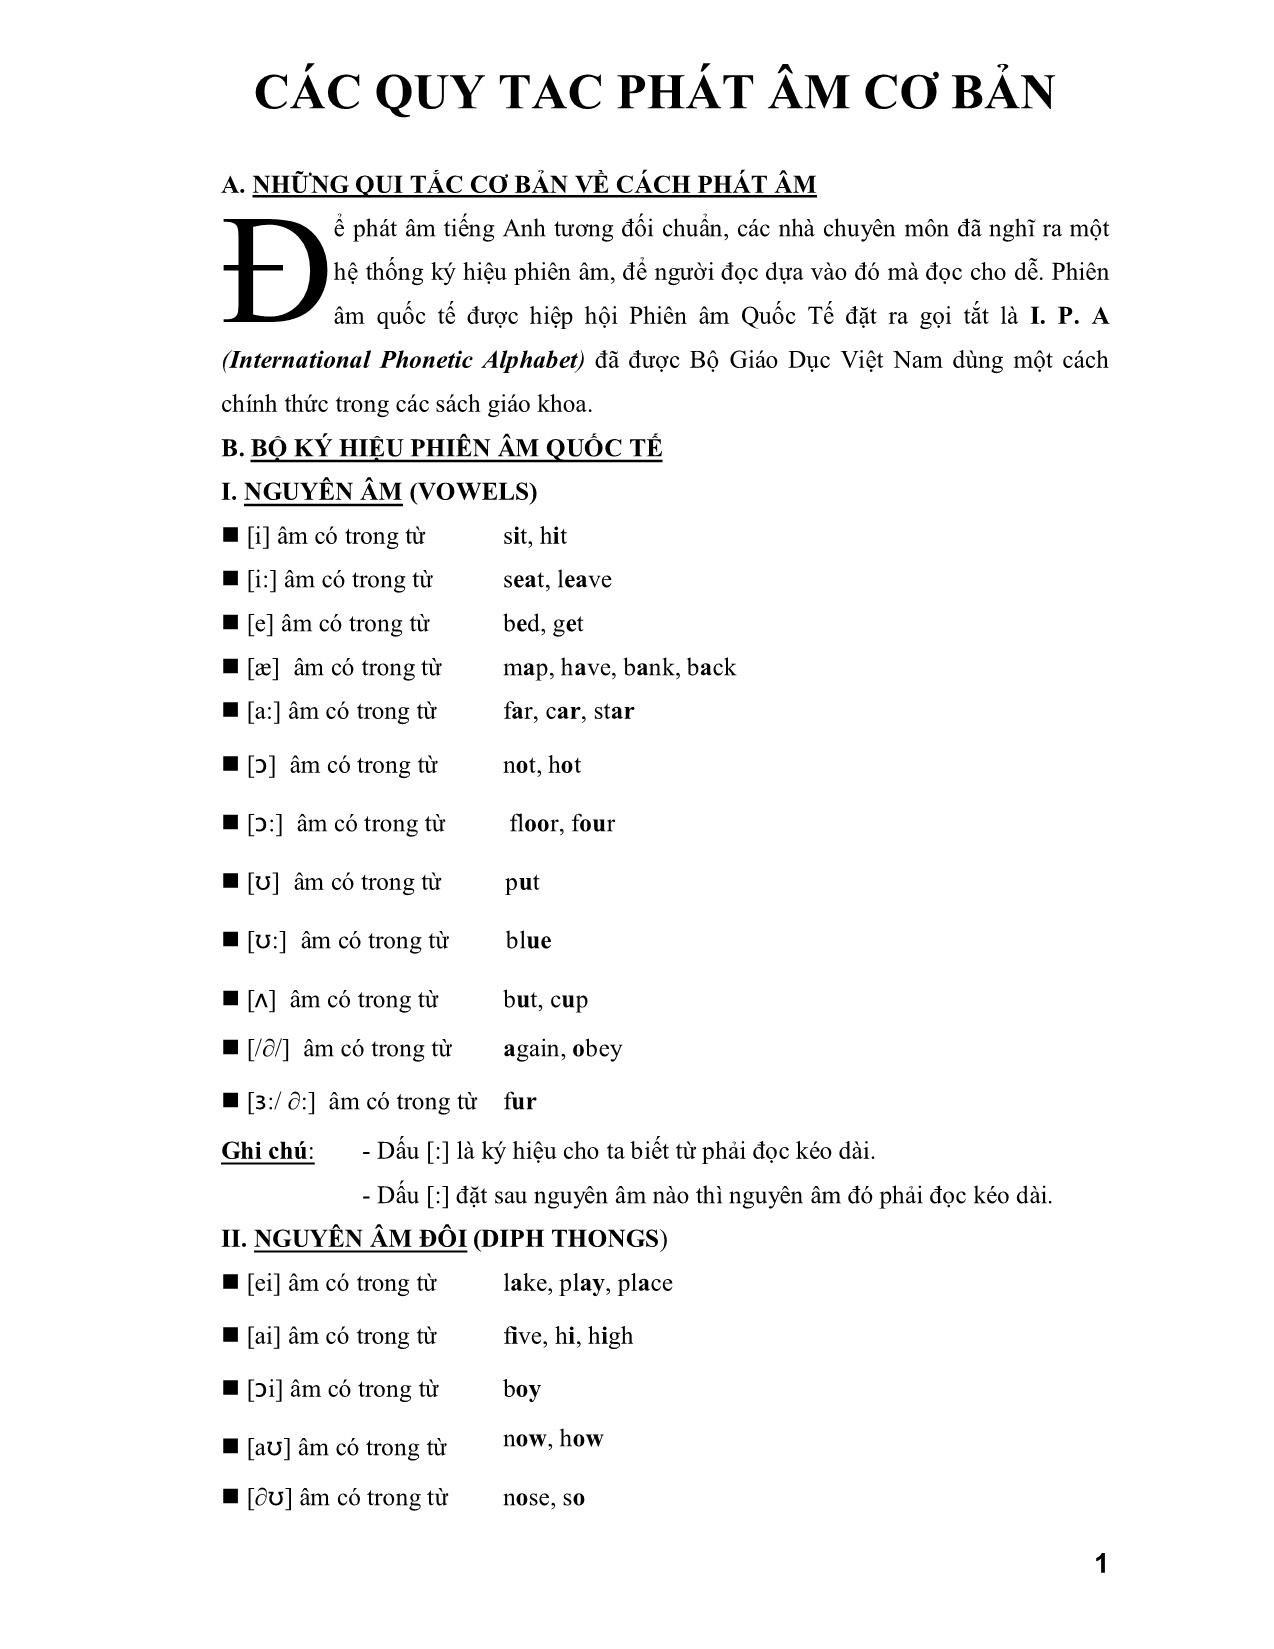 Các quy tắc phát âm tiếng Anh cơ bản trang 1